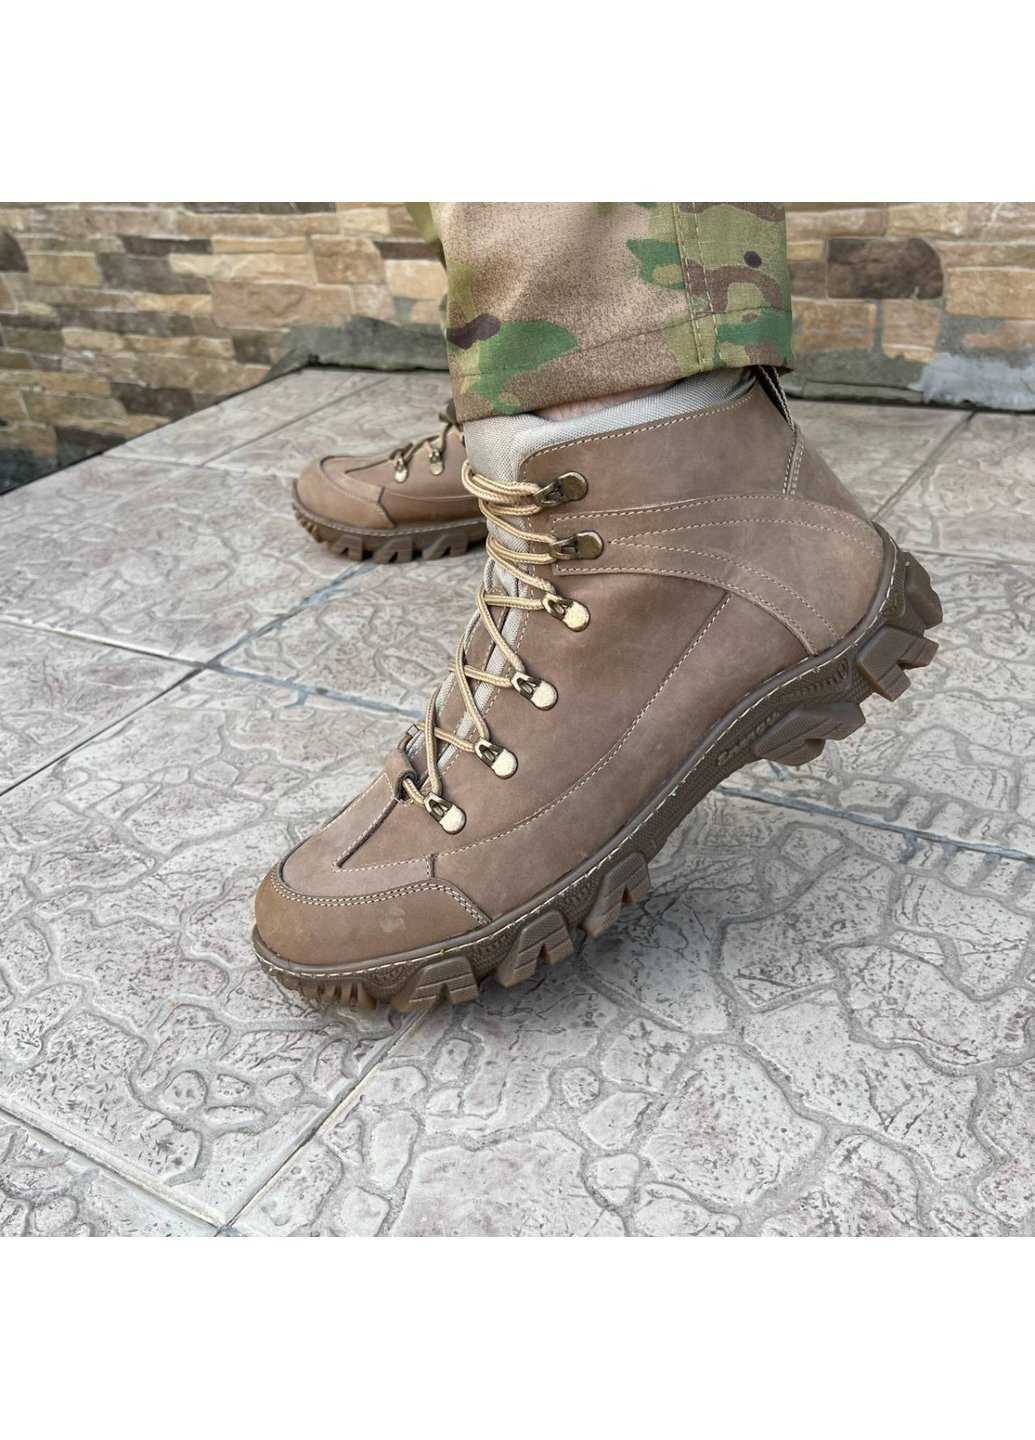 Коричневые осенние ботинки военные тактические всу (зсу) 7521 42 р 28 см коричневые Power